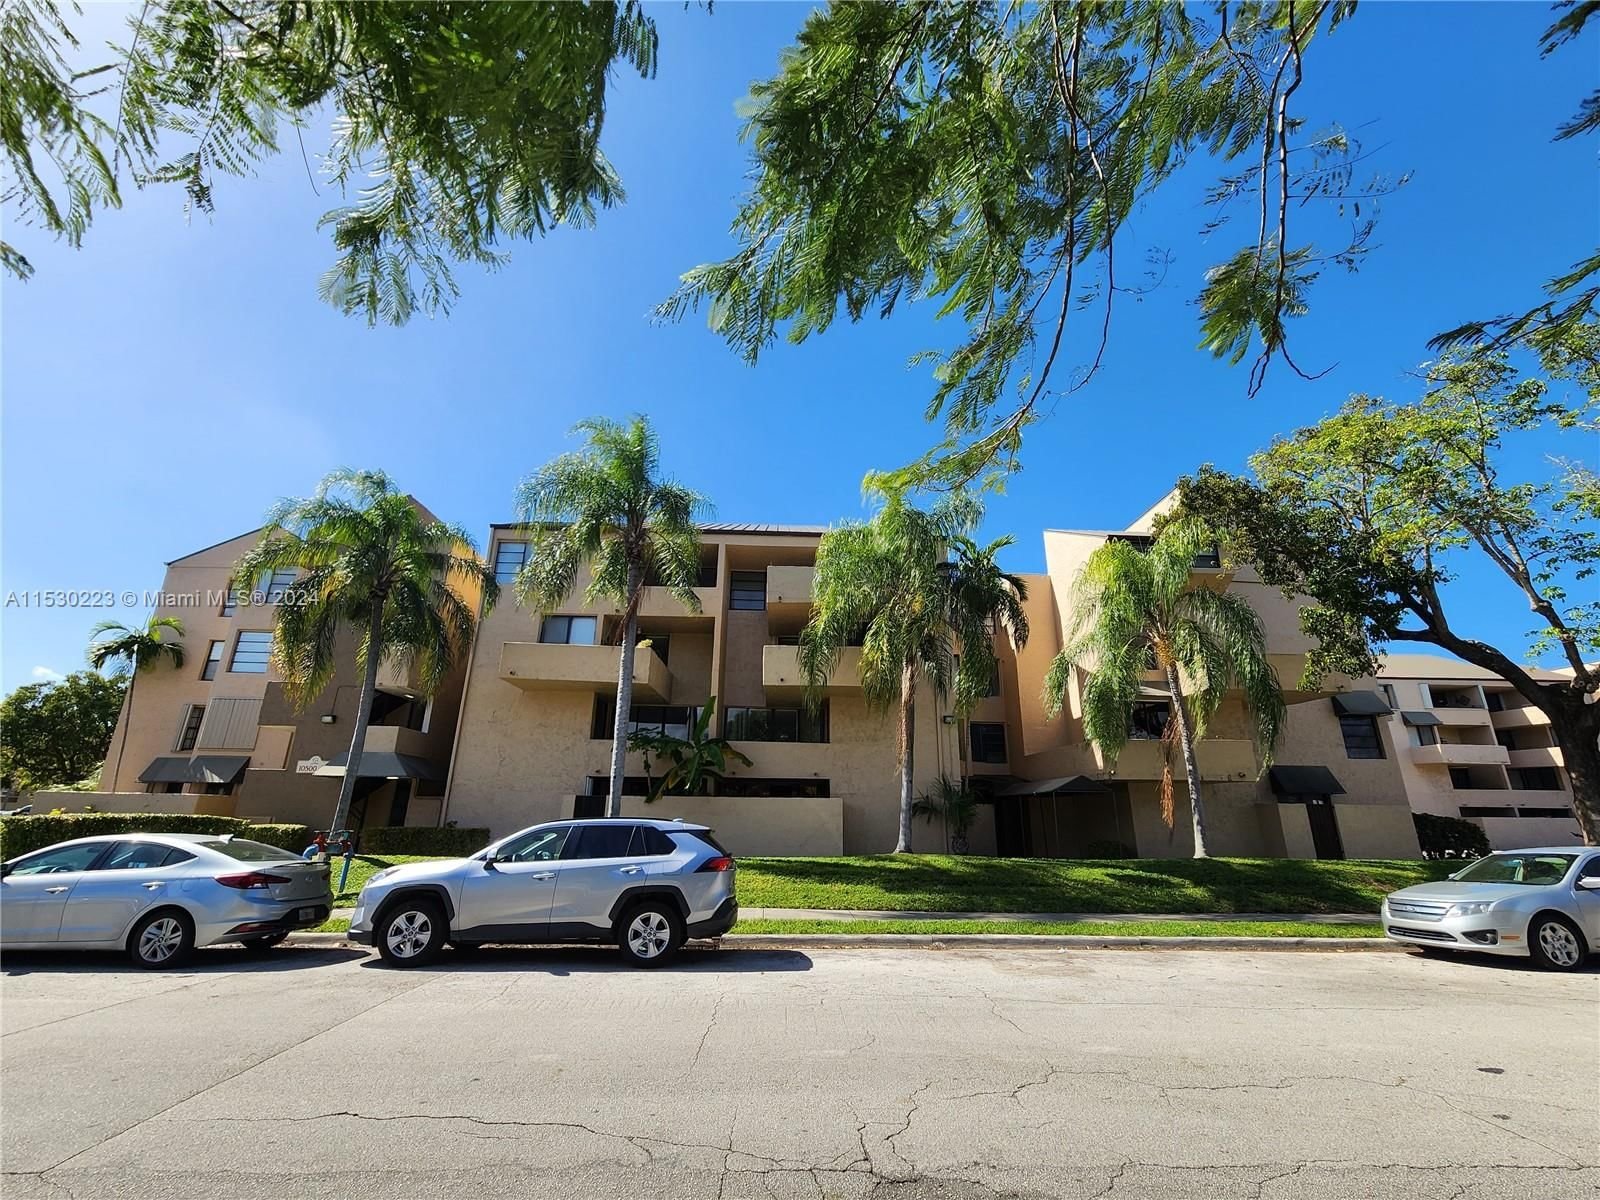 Real estate property located at 10500 108th Ave B206, Miami-Dade County, THE TERRACES CONDO PH II, Miami, FL